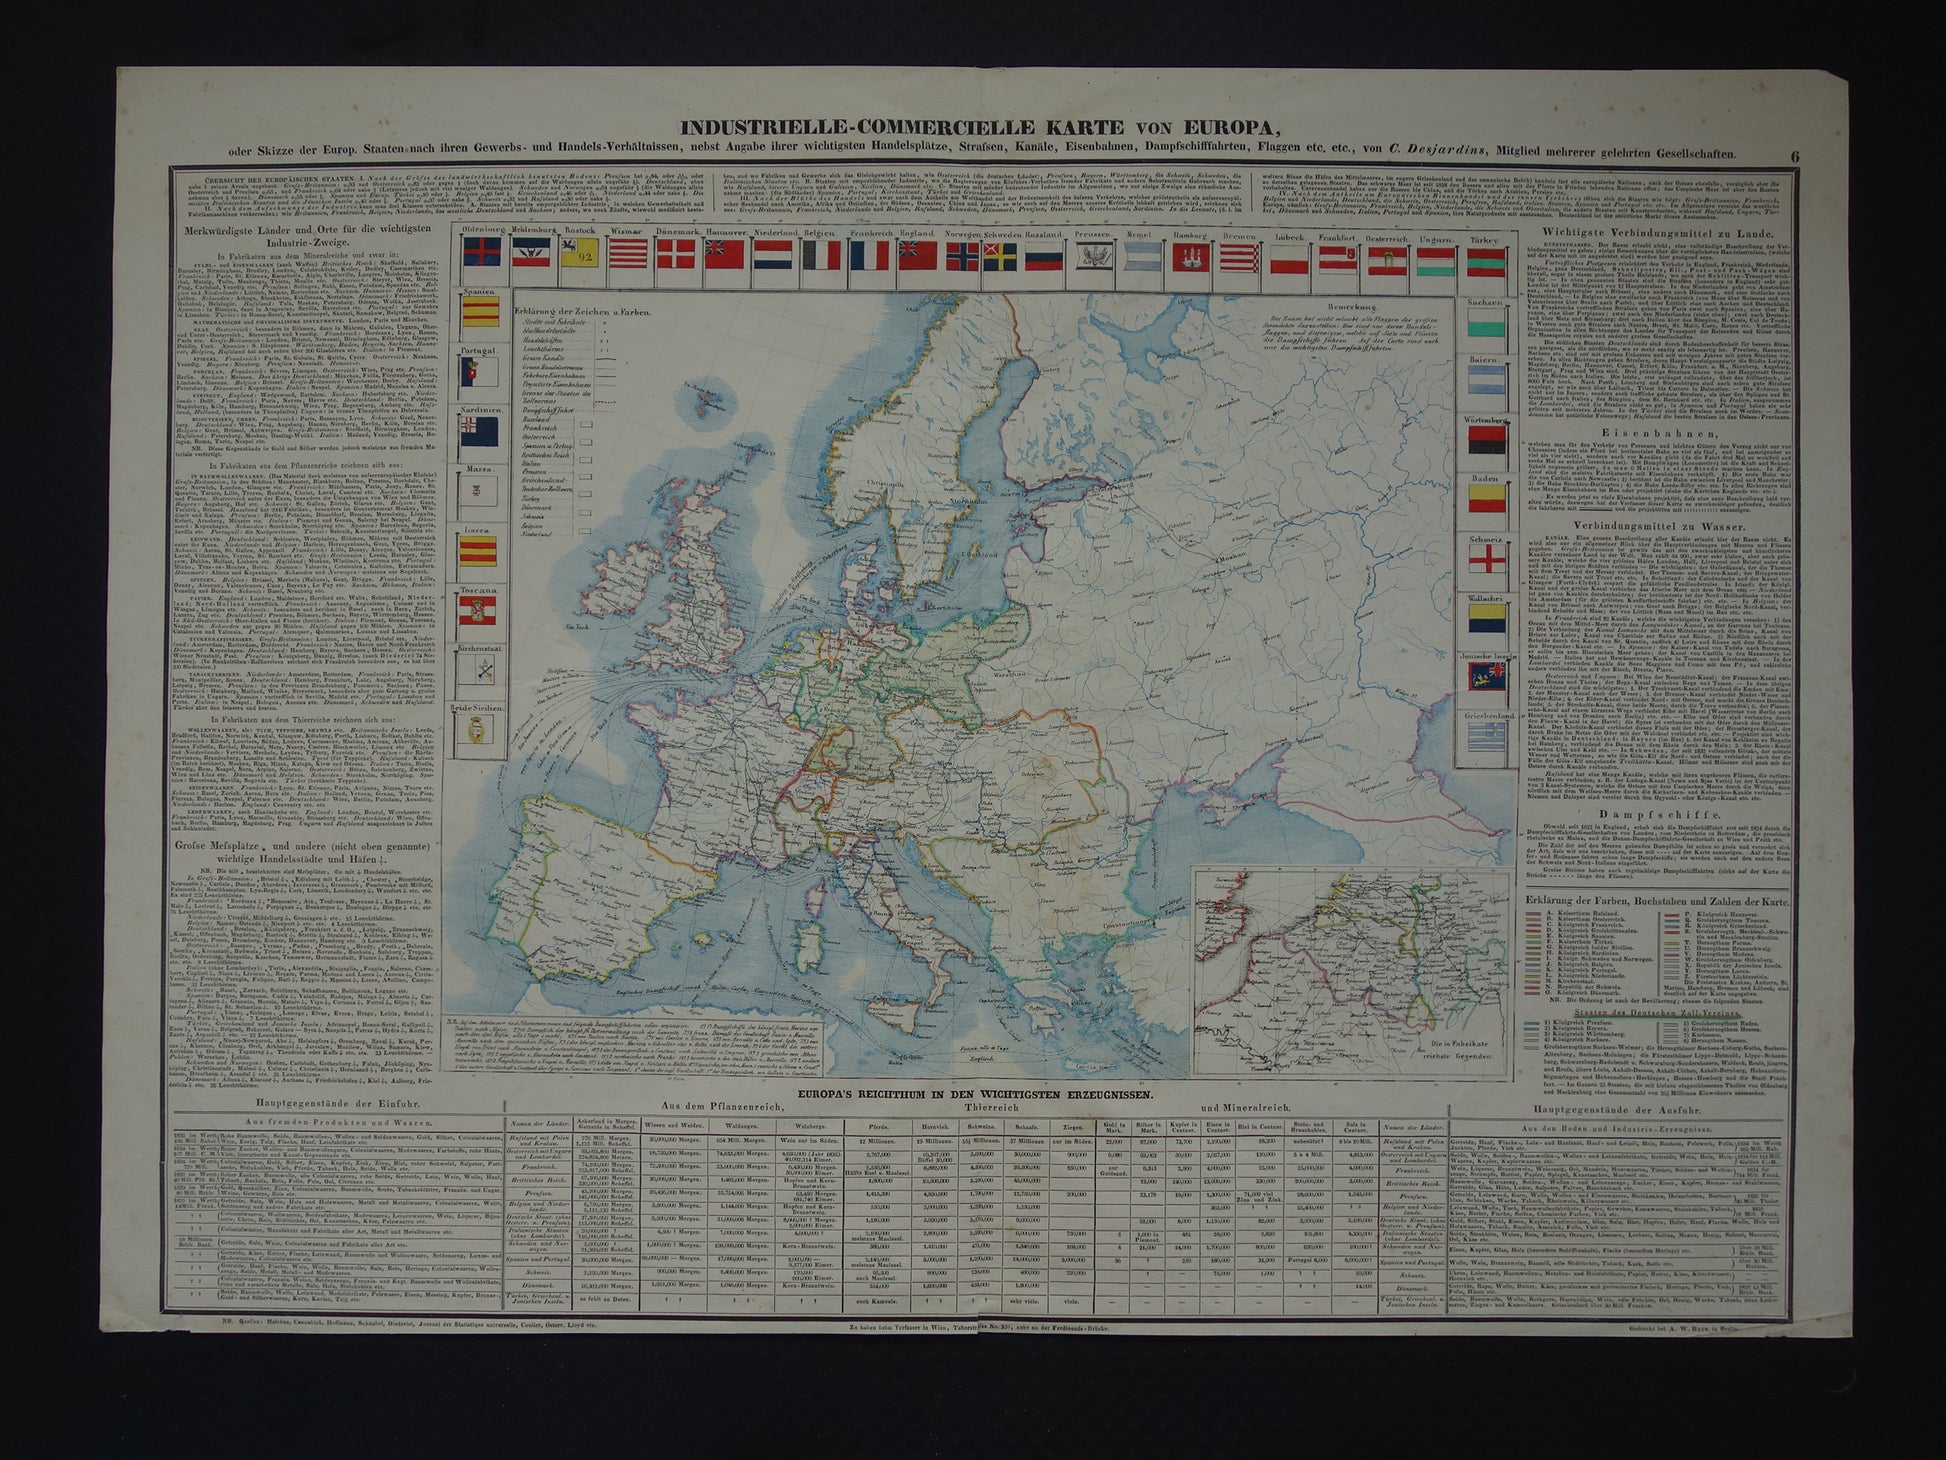 Industrielle-commercielle kart von Europa - C. Desjardins 1840